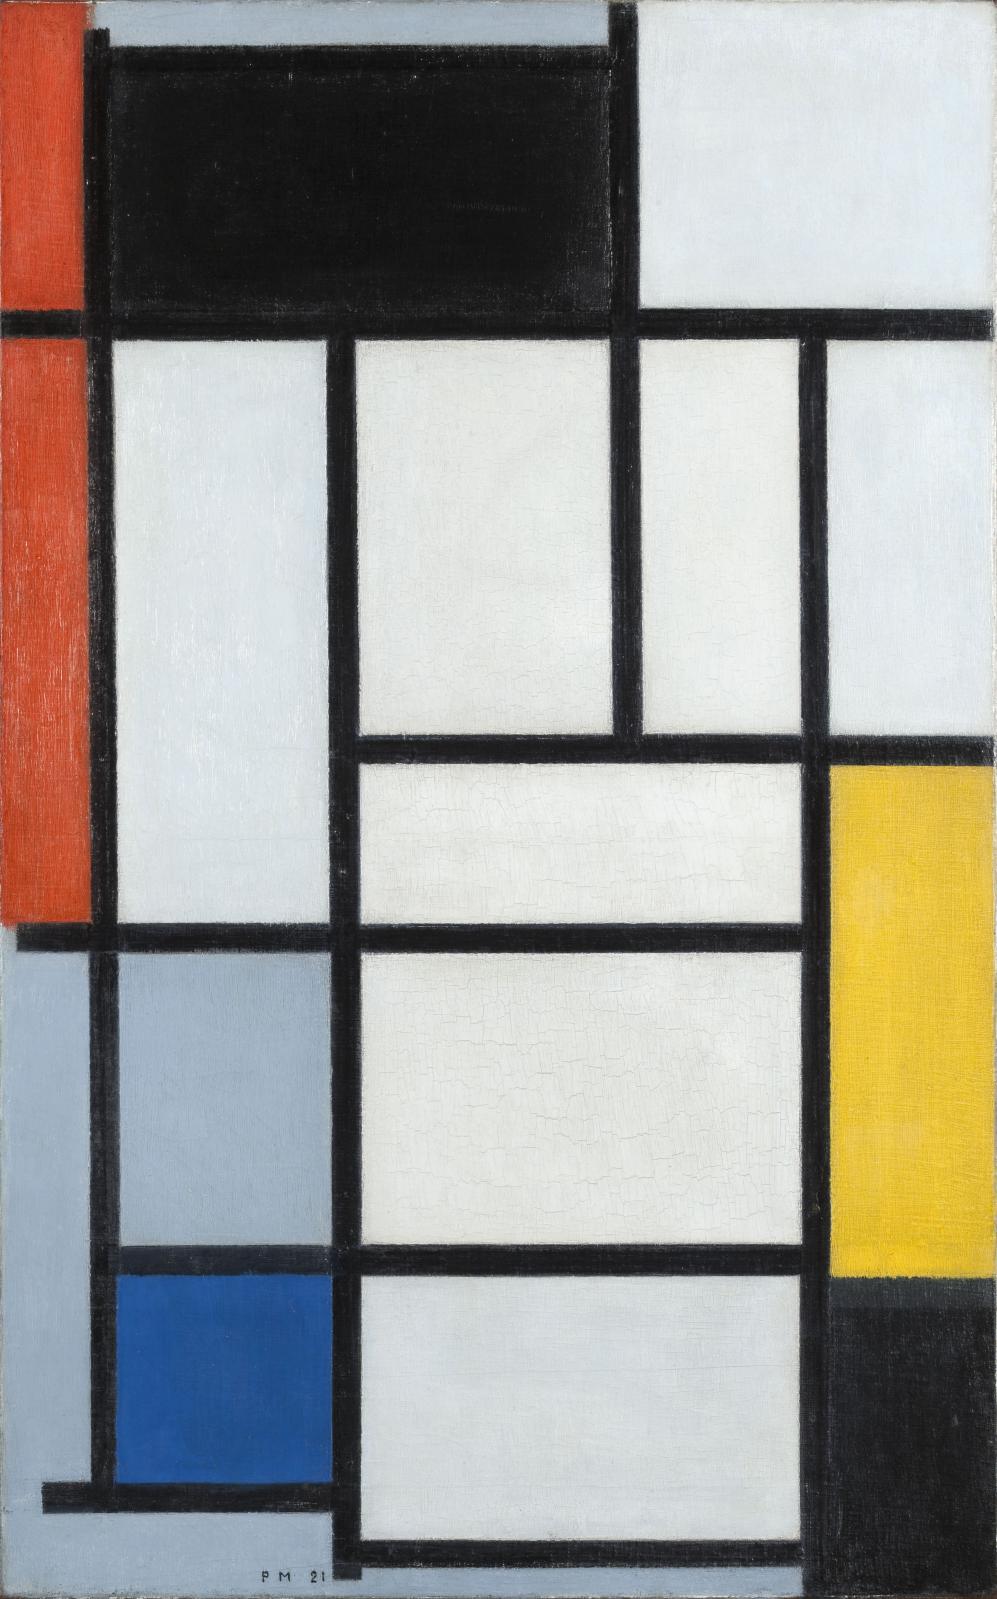 Piet Mondrian (1872-1944), Composition de rouge, noir, jaune, bleu et gris, 1921, huile sur toile, 80 x 50 cm (détail), La Haye, Gemeentemuseum. 